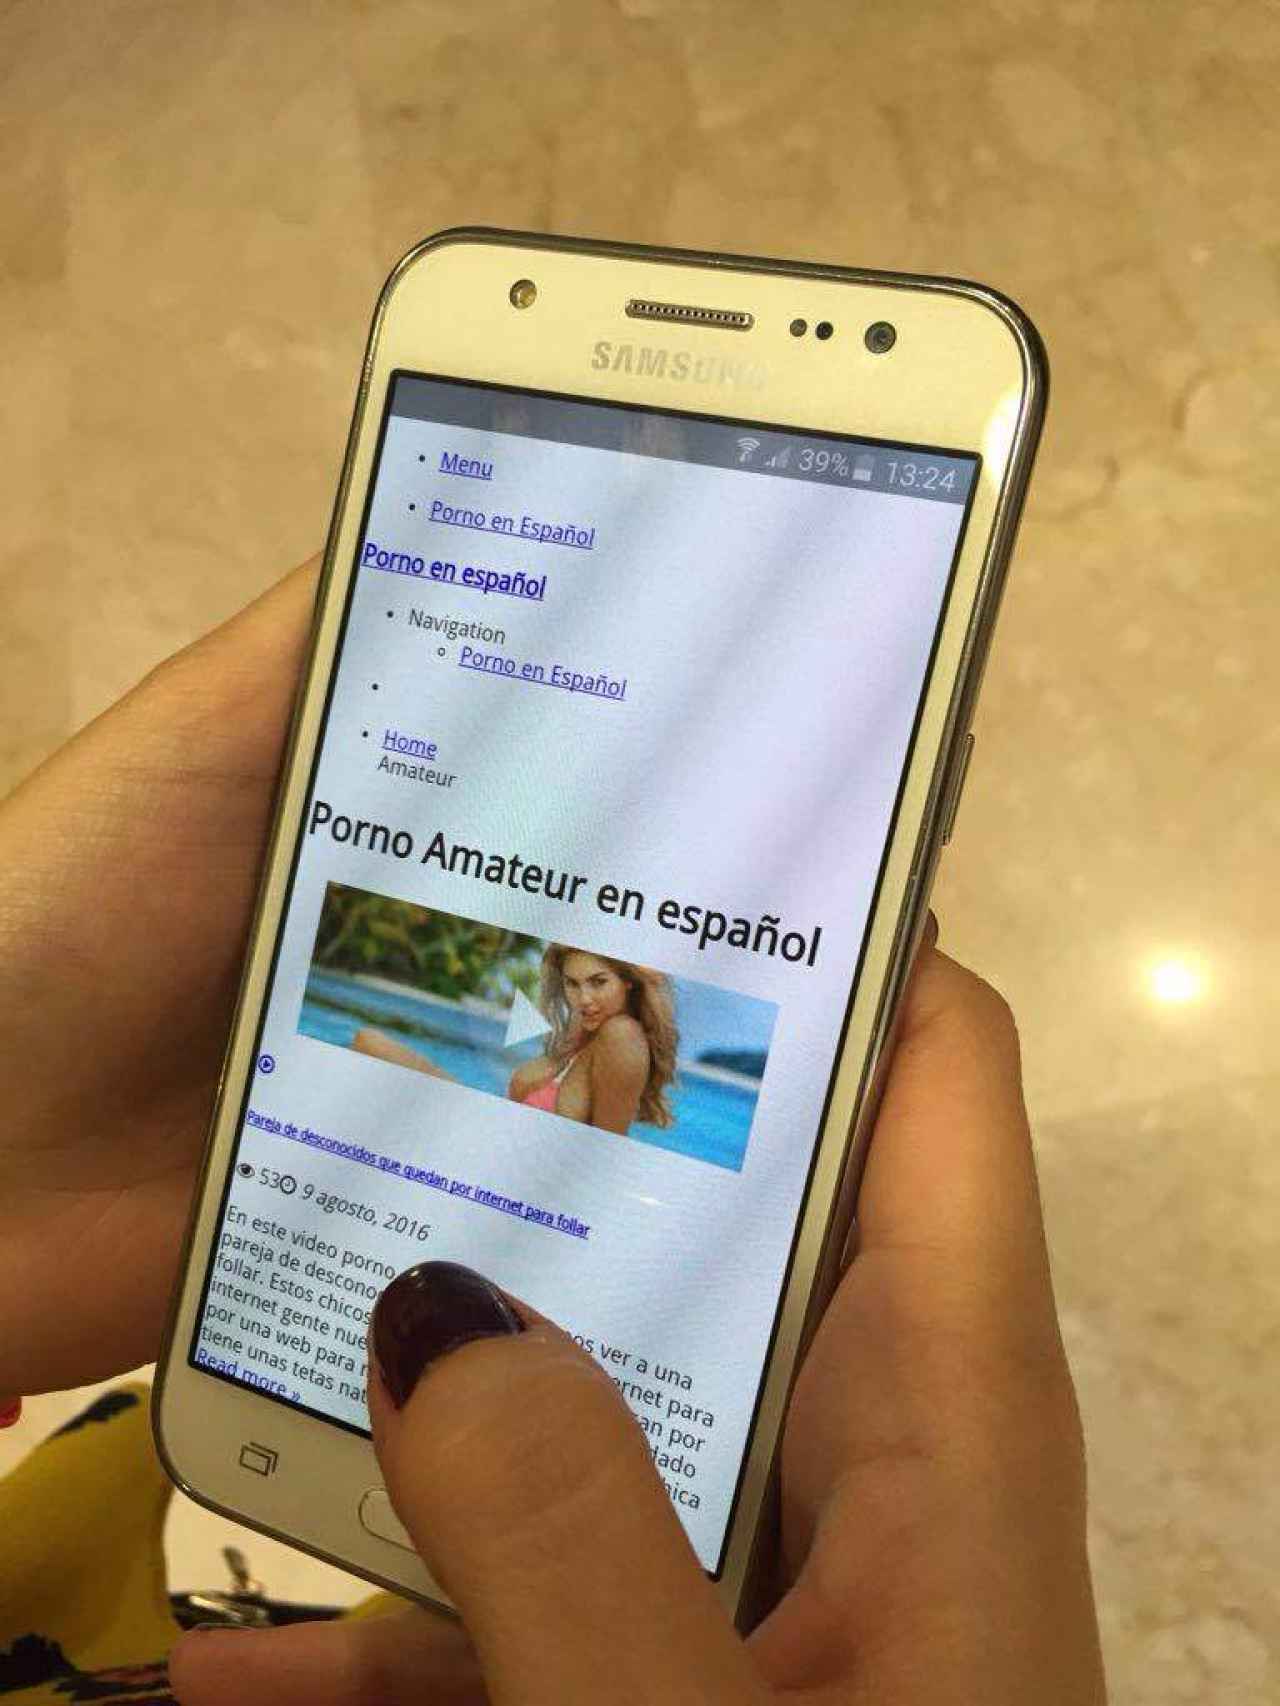 Anabel grabó una de las primeras escenas de porno amateur de internet en España